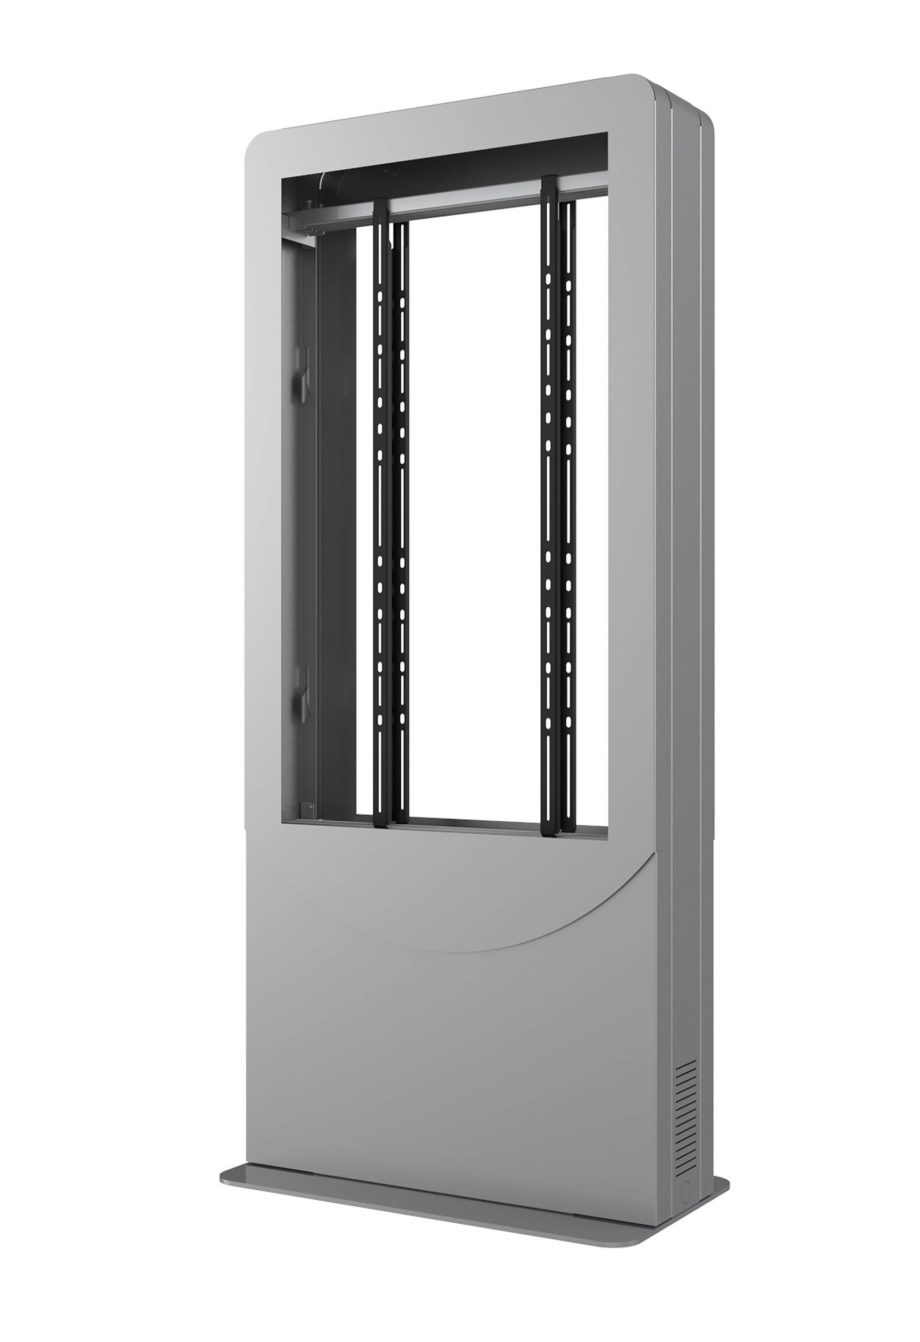 Peerless-AV KIPC2550B-S-3-EUK Floorstanding Portrait Back-to-Back Kiosk for Two 50″ Displays up to 3″ Deep, Silver, EUK